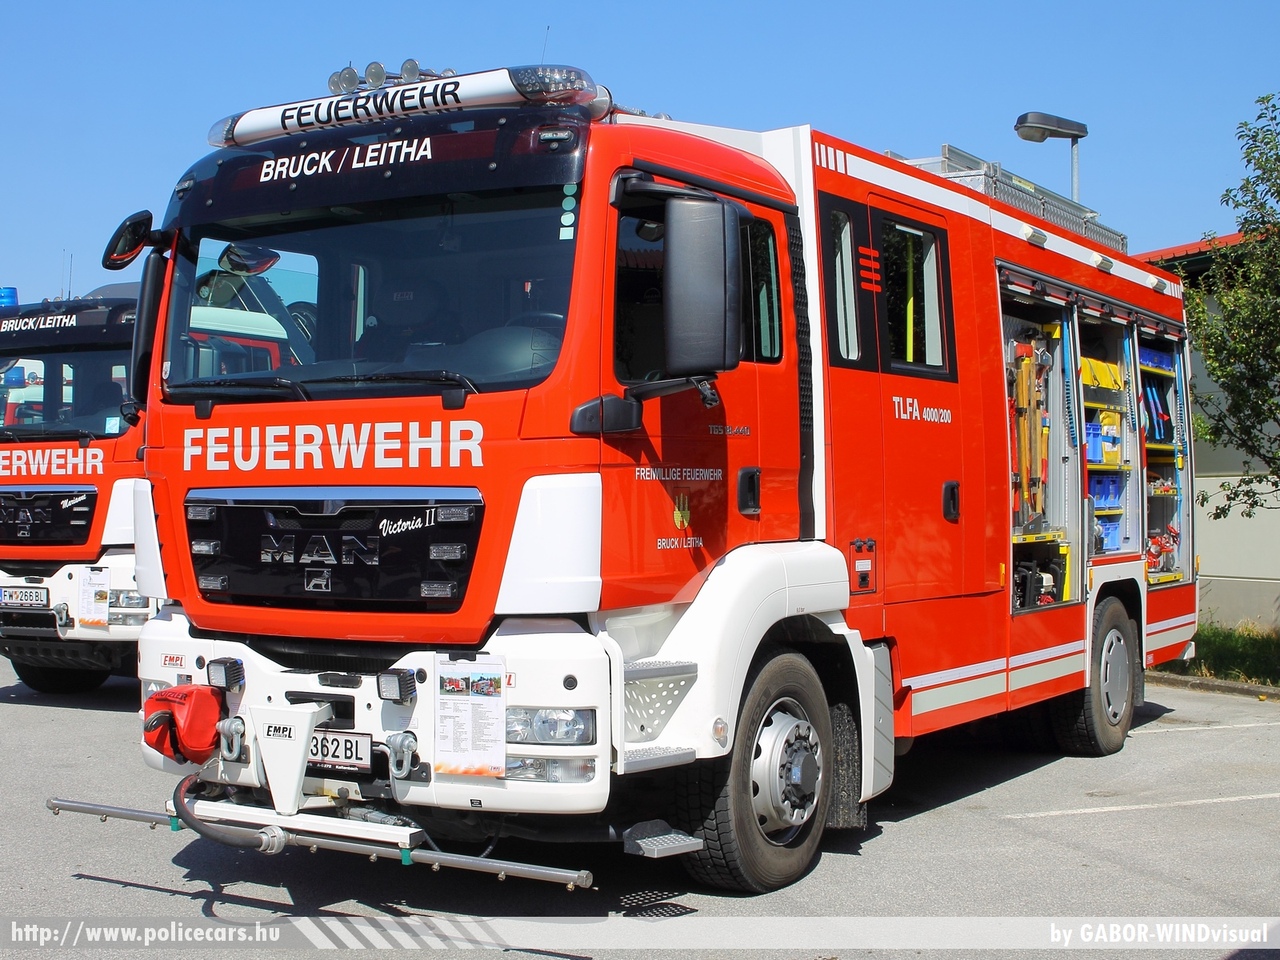 MAN TLF-A 4000/200, Freiwillige Feuerwher Bruck/Leitha, fotó: GABOR-WINDvisual
Keywords: osztrák Ausztria tûzoltó tûzoltóautó tûzoltóság fire firetruck Austria